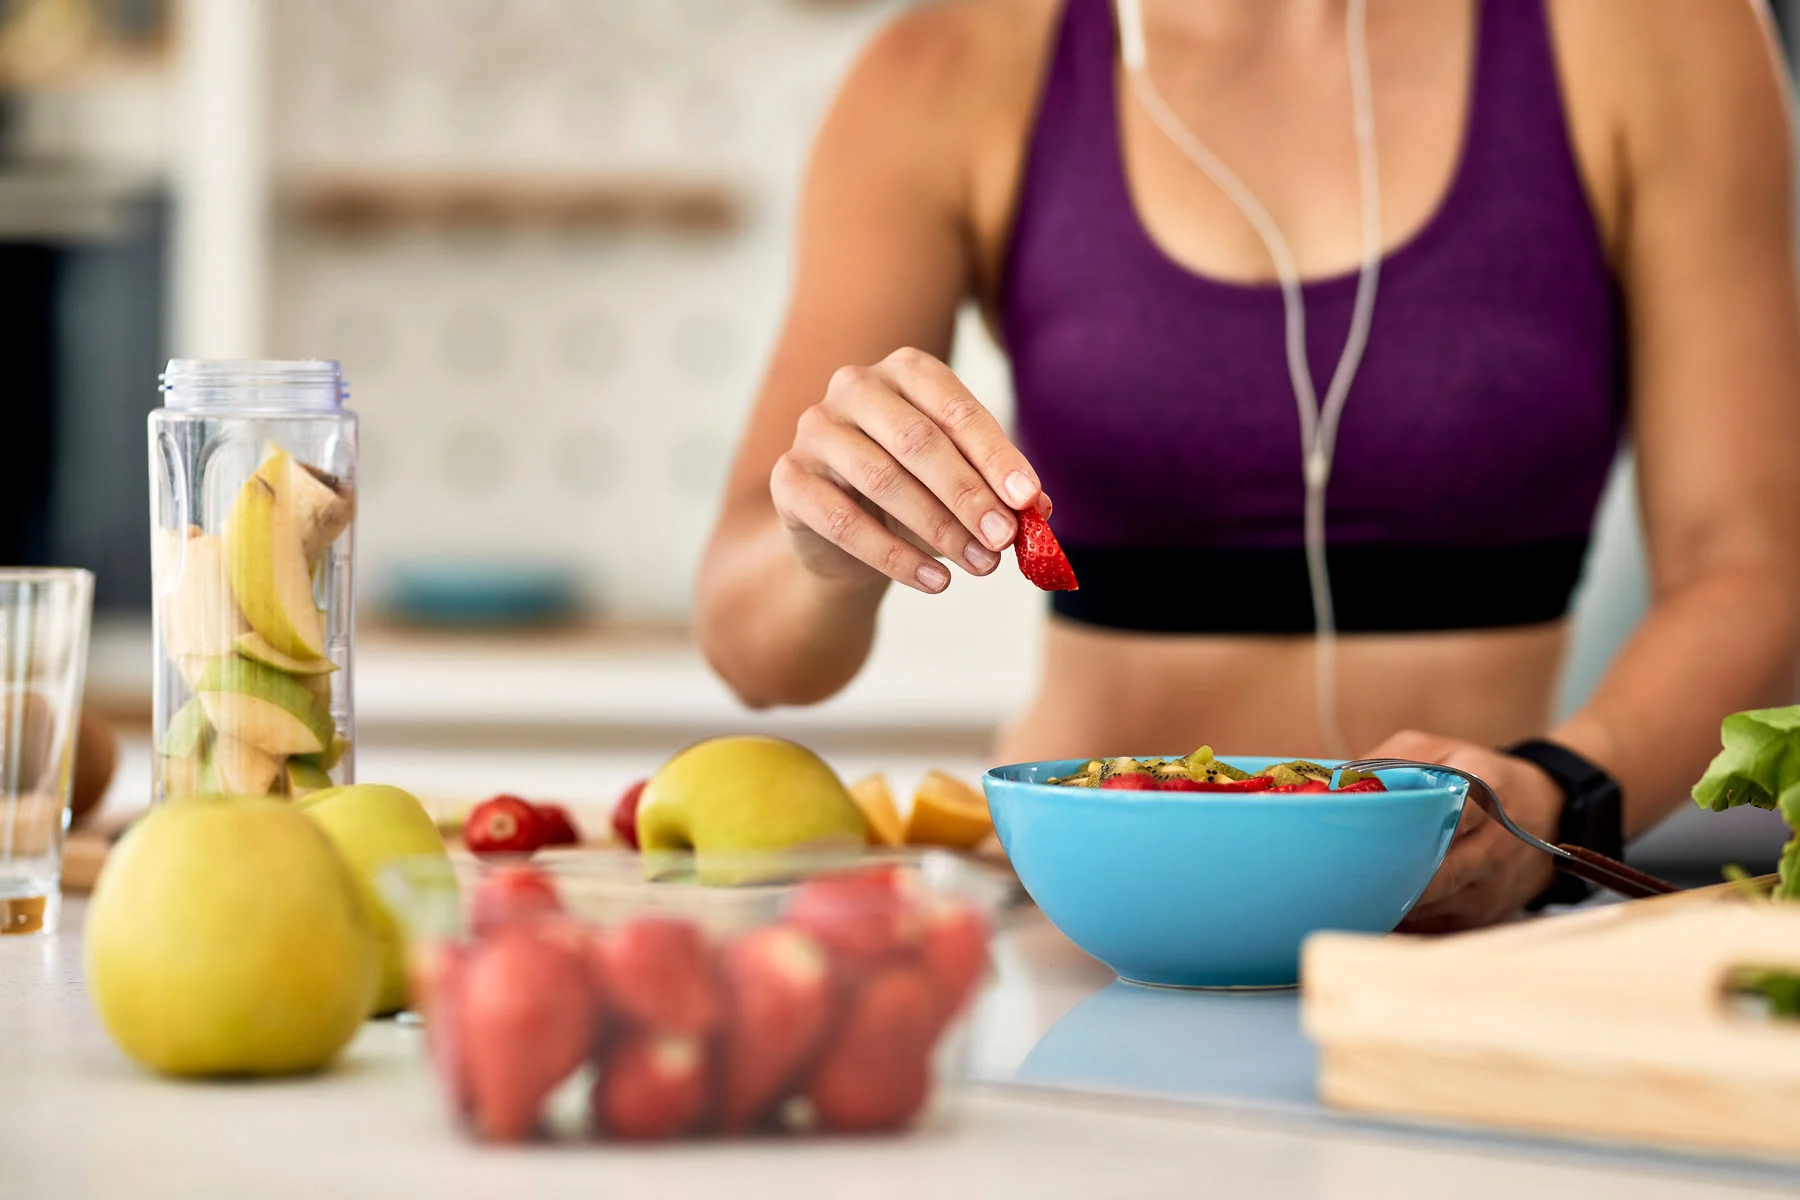 10 zdrowych nawyków do wprowadzenia do codziennej rutyny dla lepszego stylu życia